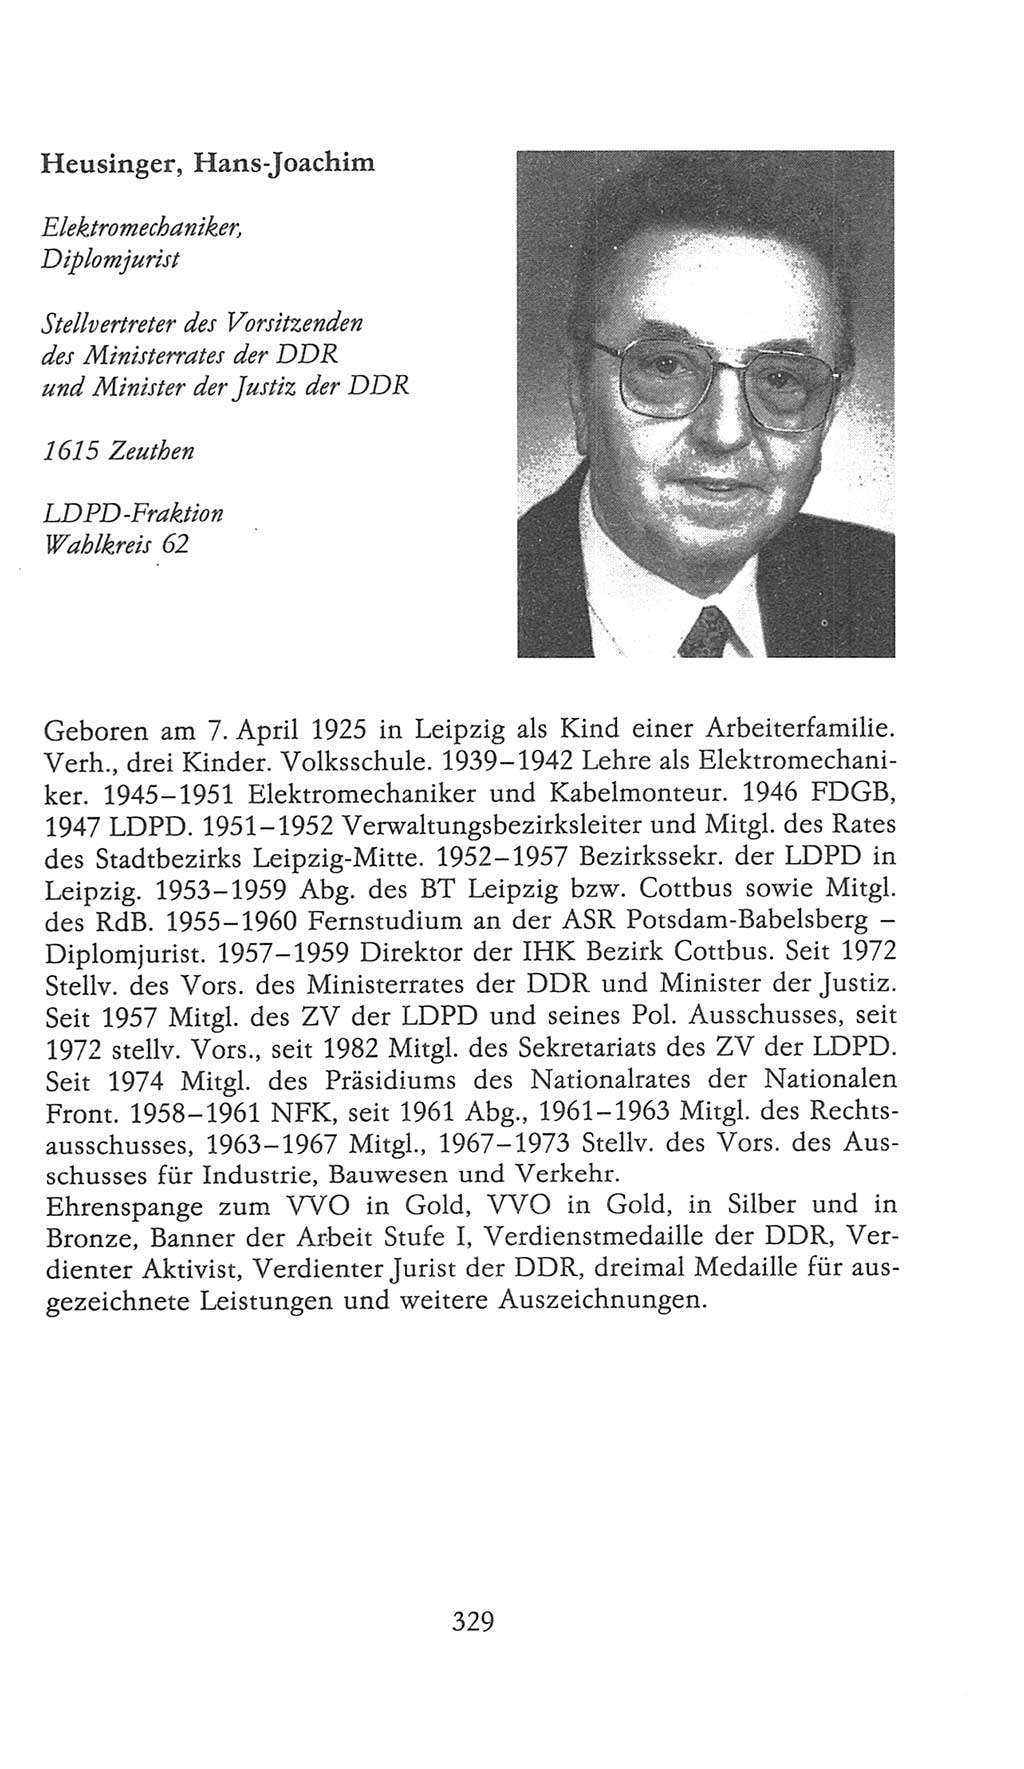 Volkskammer (VK) der Deutschen Demokratischen Republik (DDR), 9. Wahlperiode 1986-1990, Seite 329 (VK. DDR 9. WP. 1986-1990, S. 329)